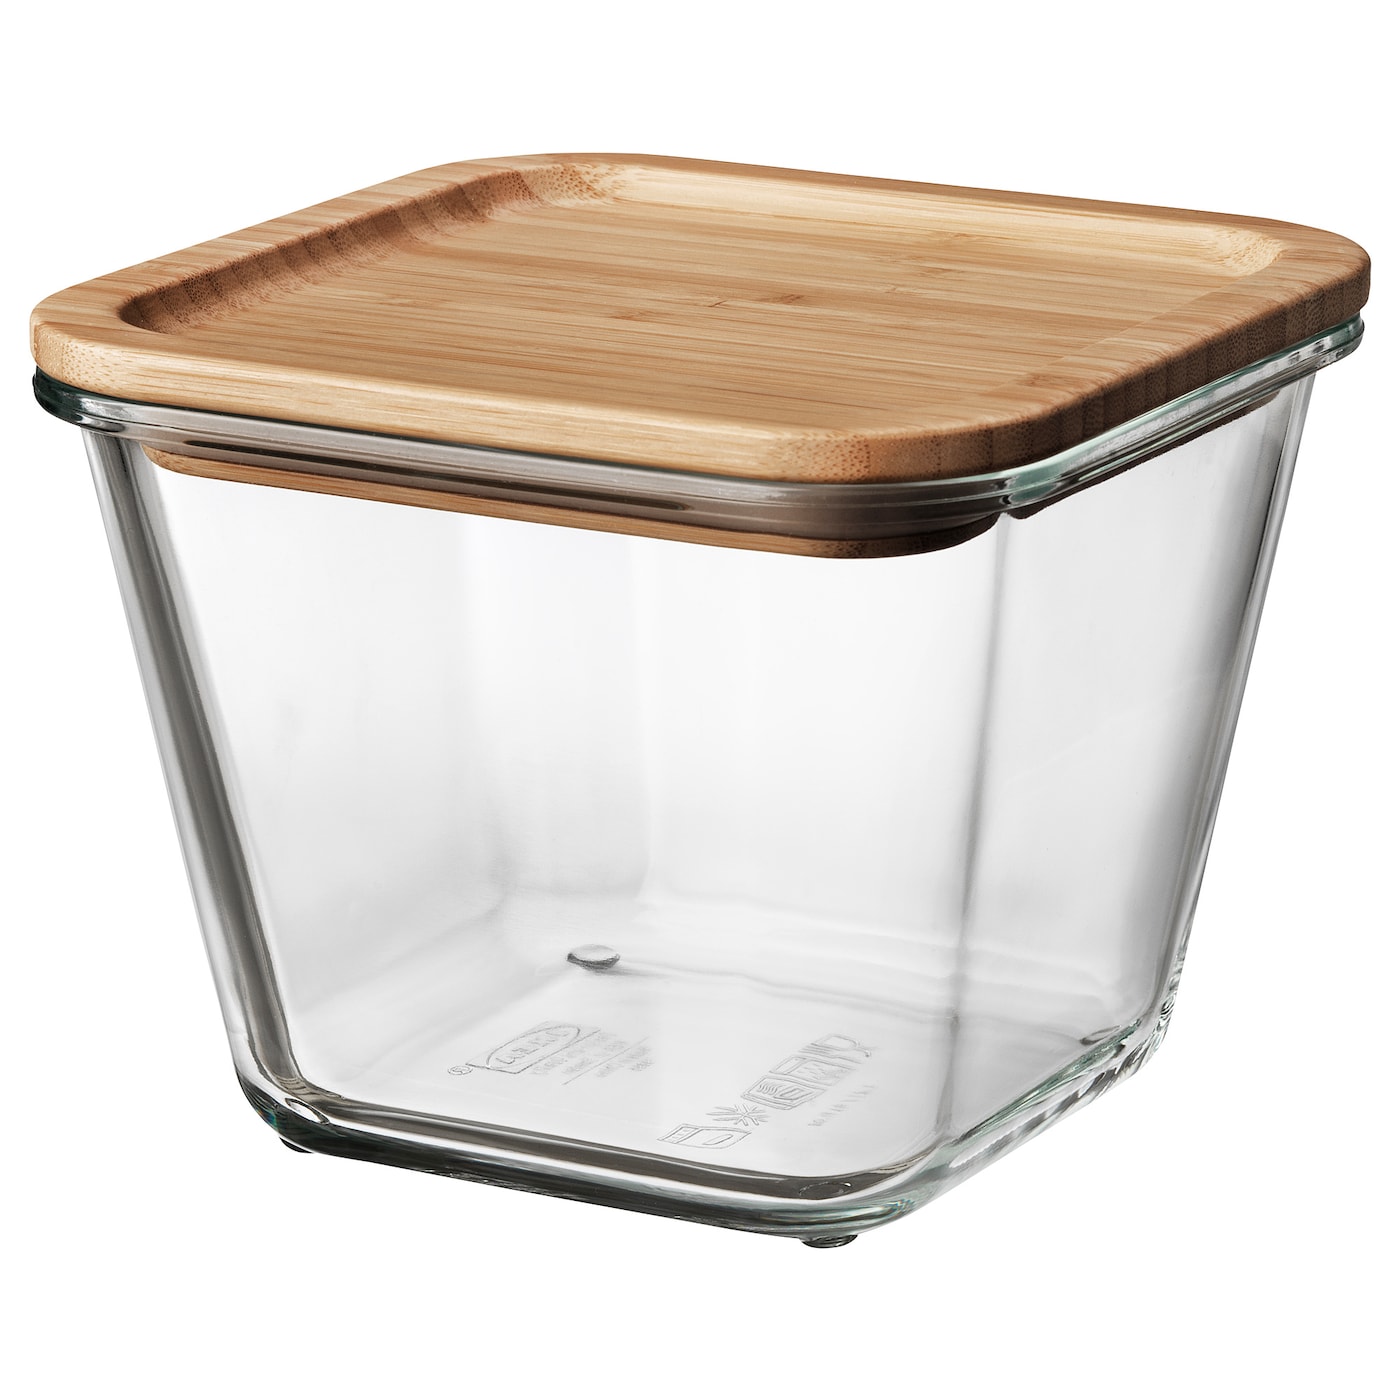 Контейнер для продуктов с крышкой - IKEA 365+, 15х15х12 см, стекло/бамбук, ИКЕА 365+